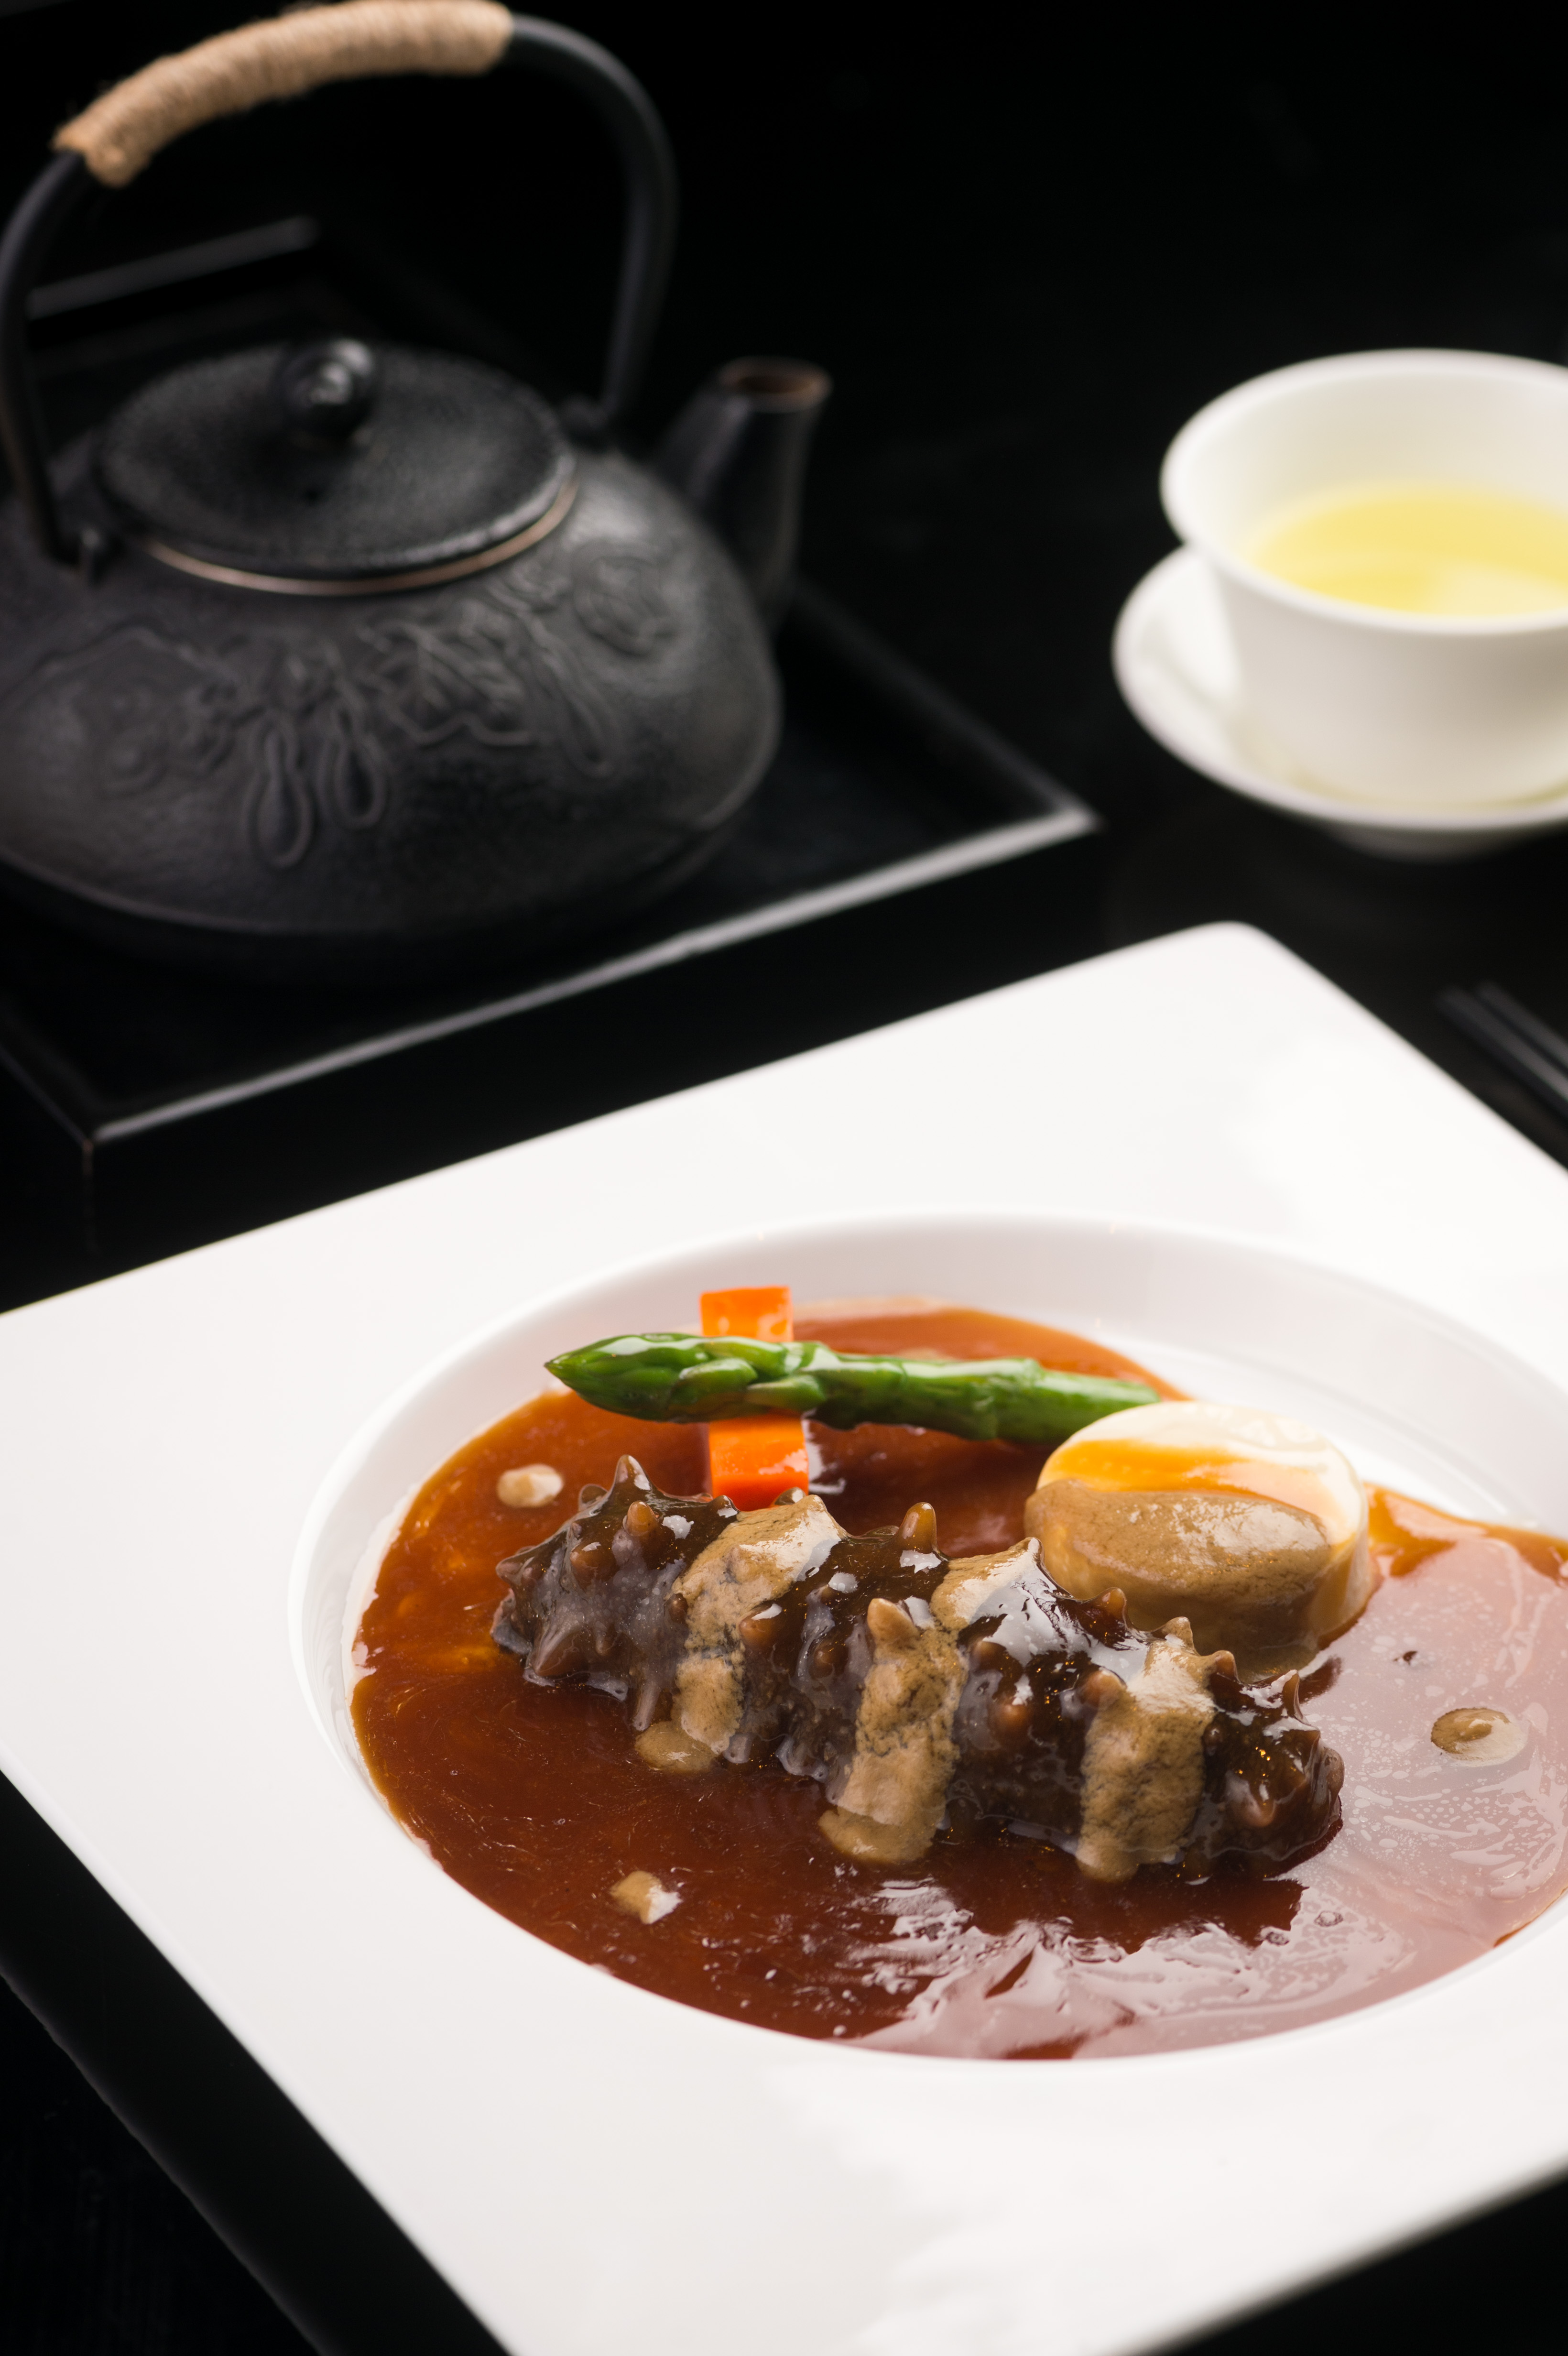 天津丽思卡尔顿酒店天泰轩新品佳肴,打造一段粤菜,津菜的美好味蕾之旅